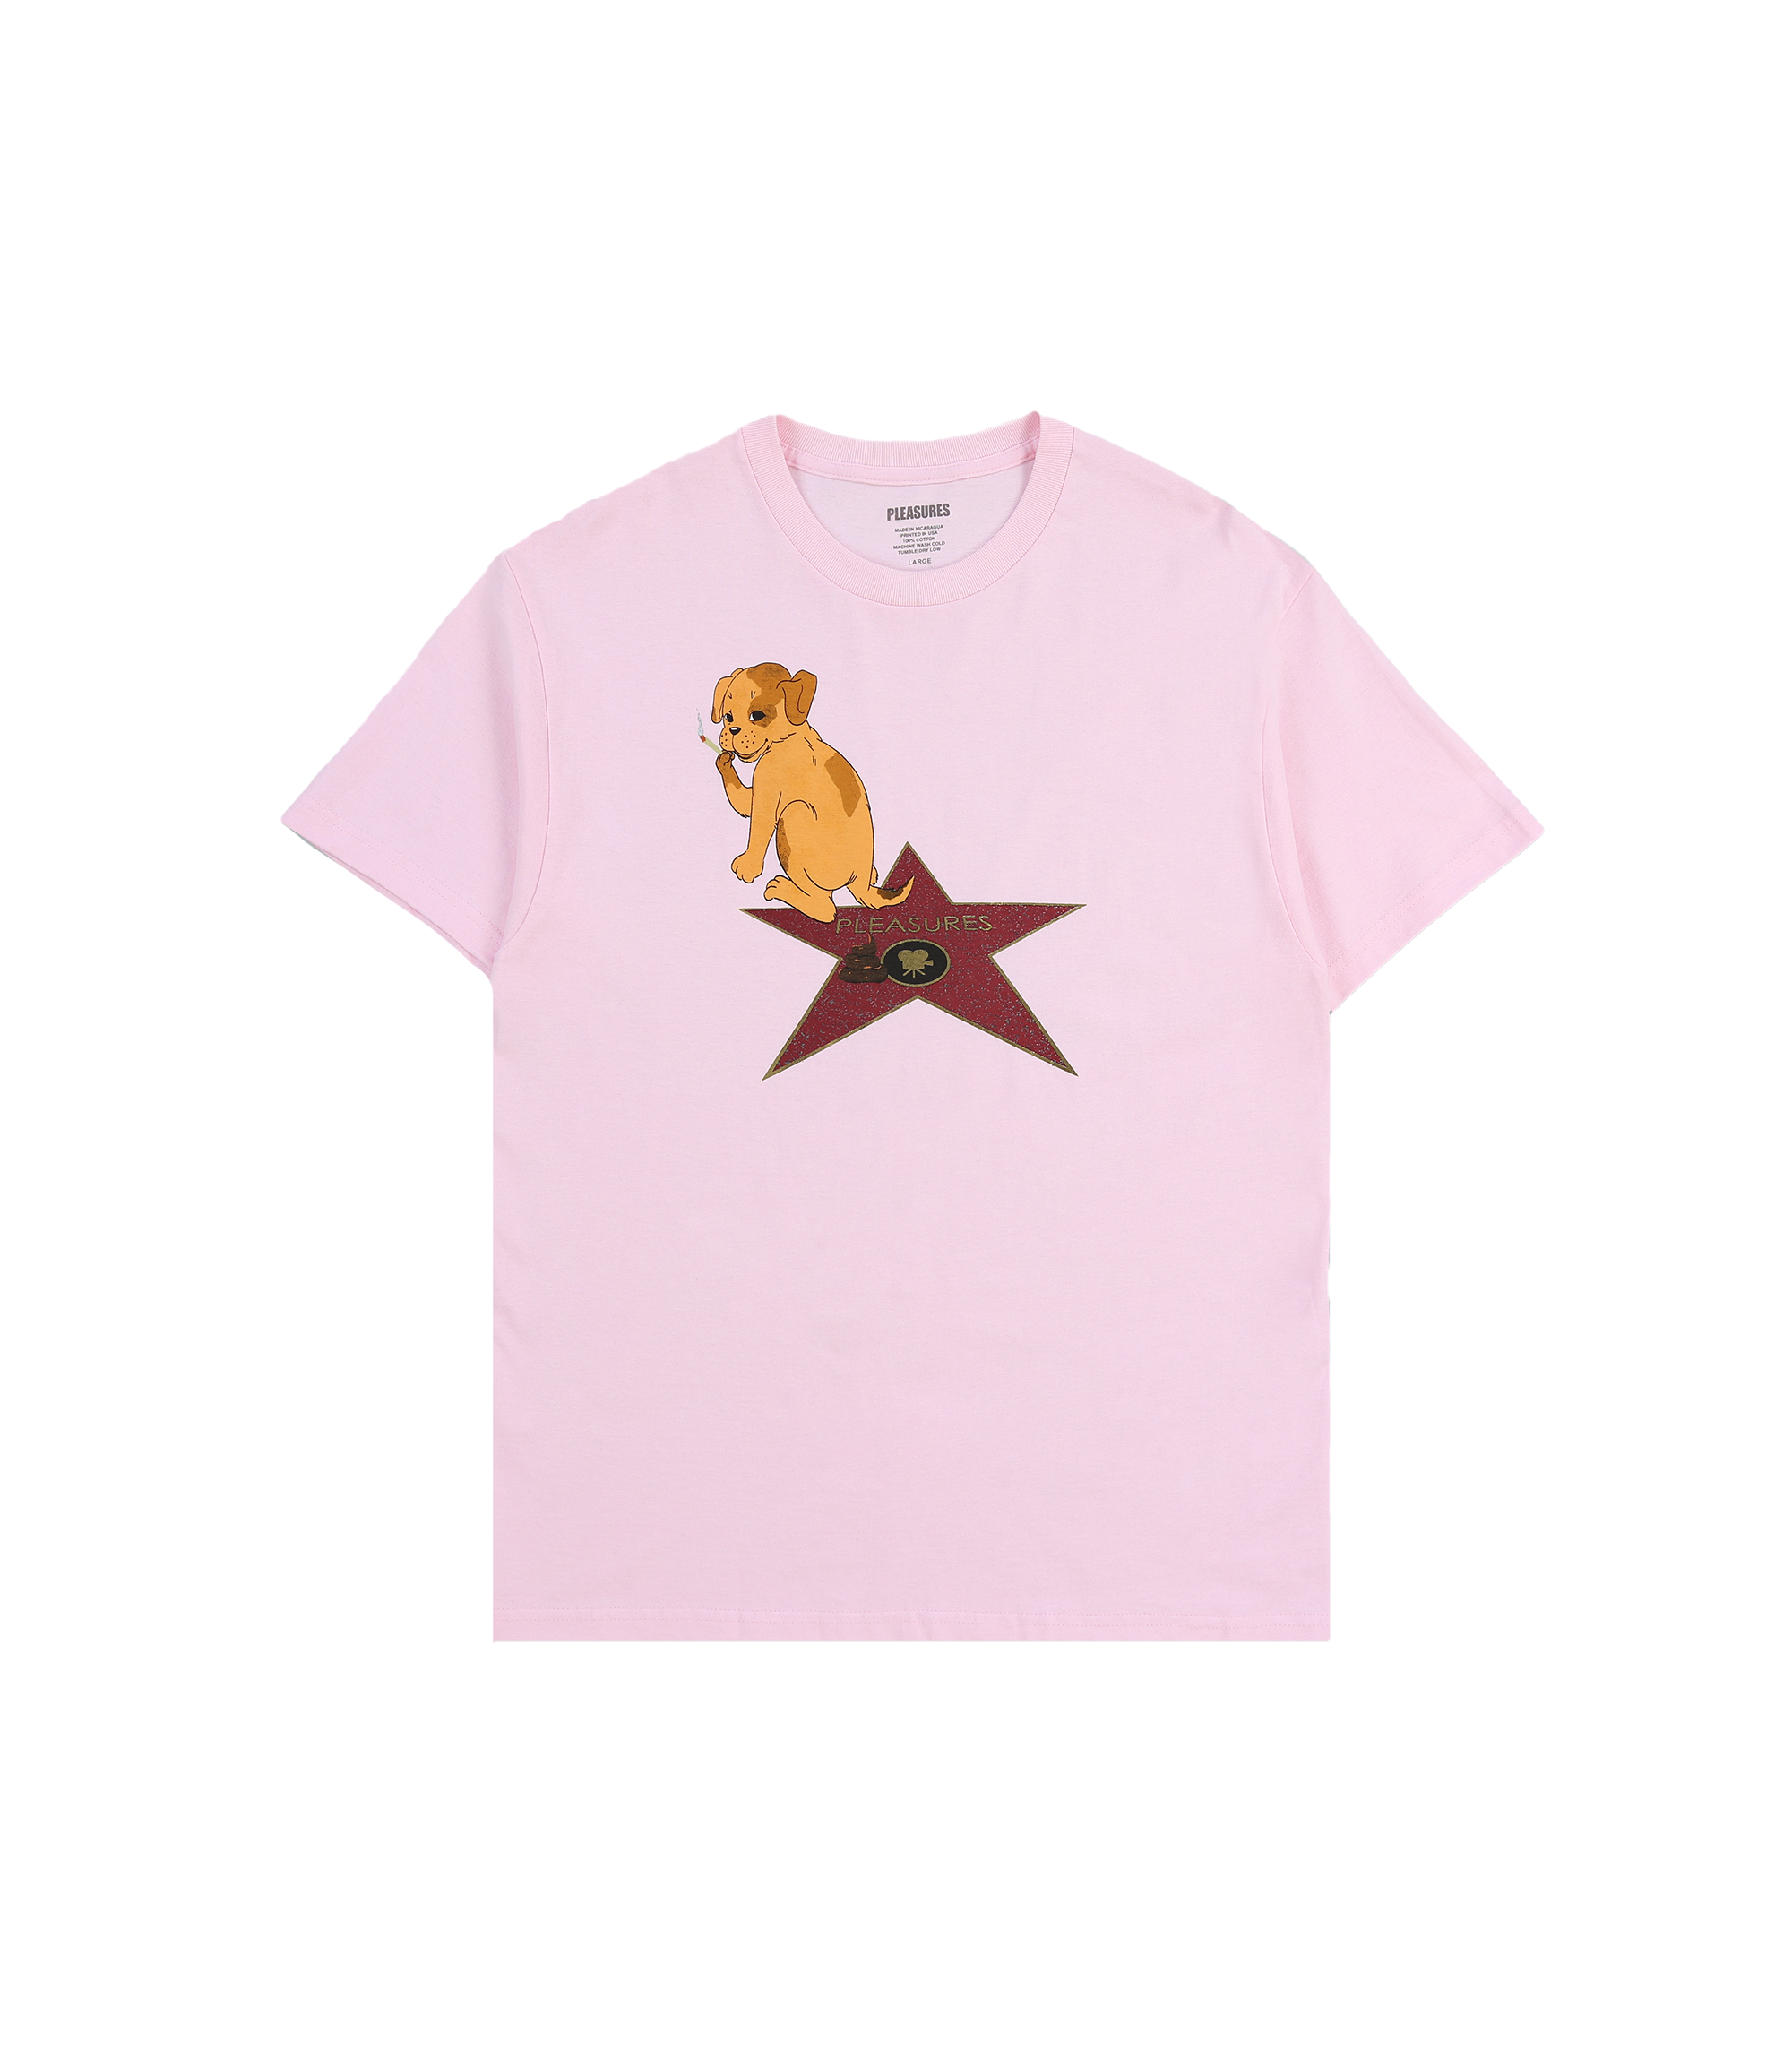 FAME T-Shirt - Pink